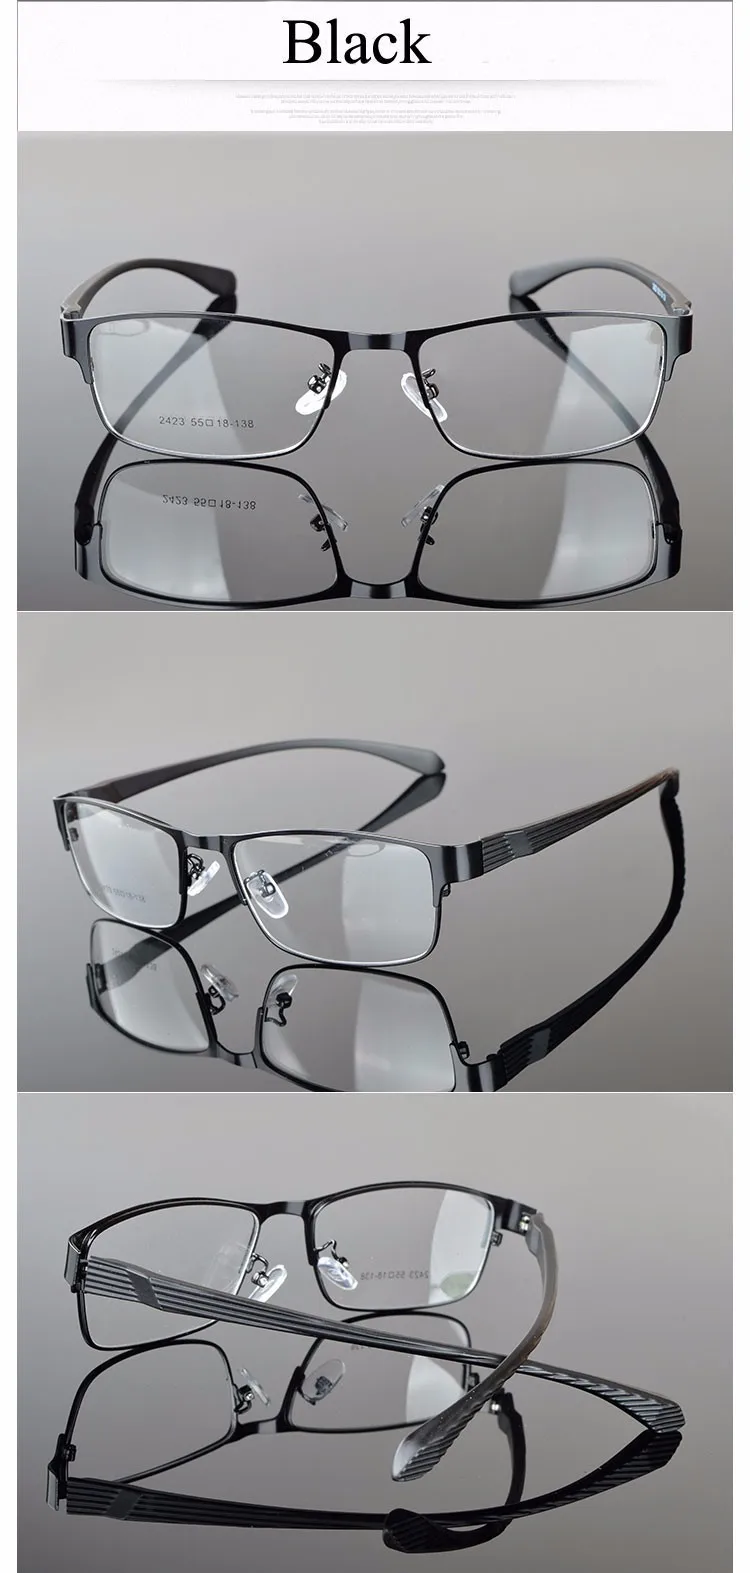 Новые Морден из нержавеющей стали ОТличные очки для мужчин 2423 оправа для установки линз по рецепту модная оптическая рамка для очков